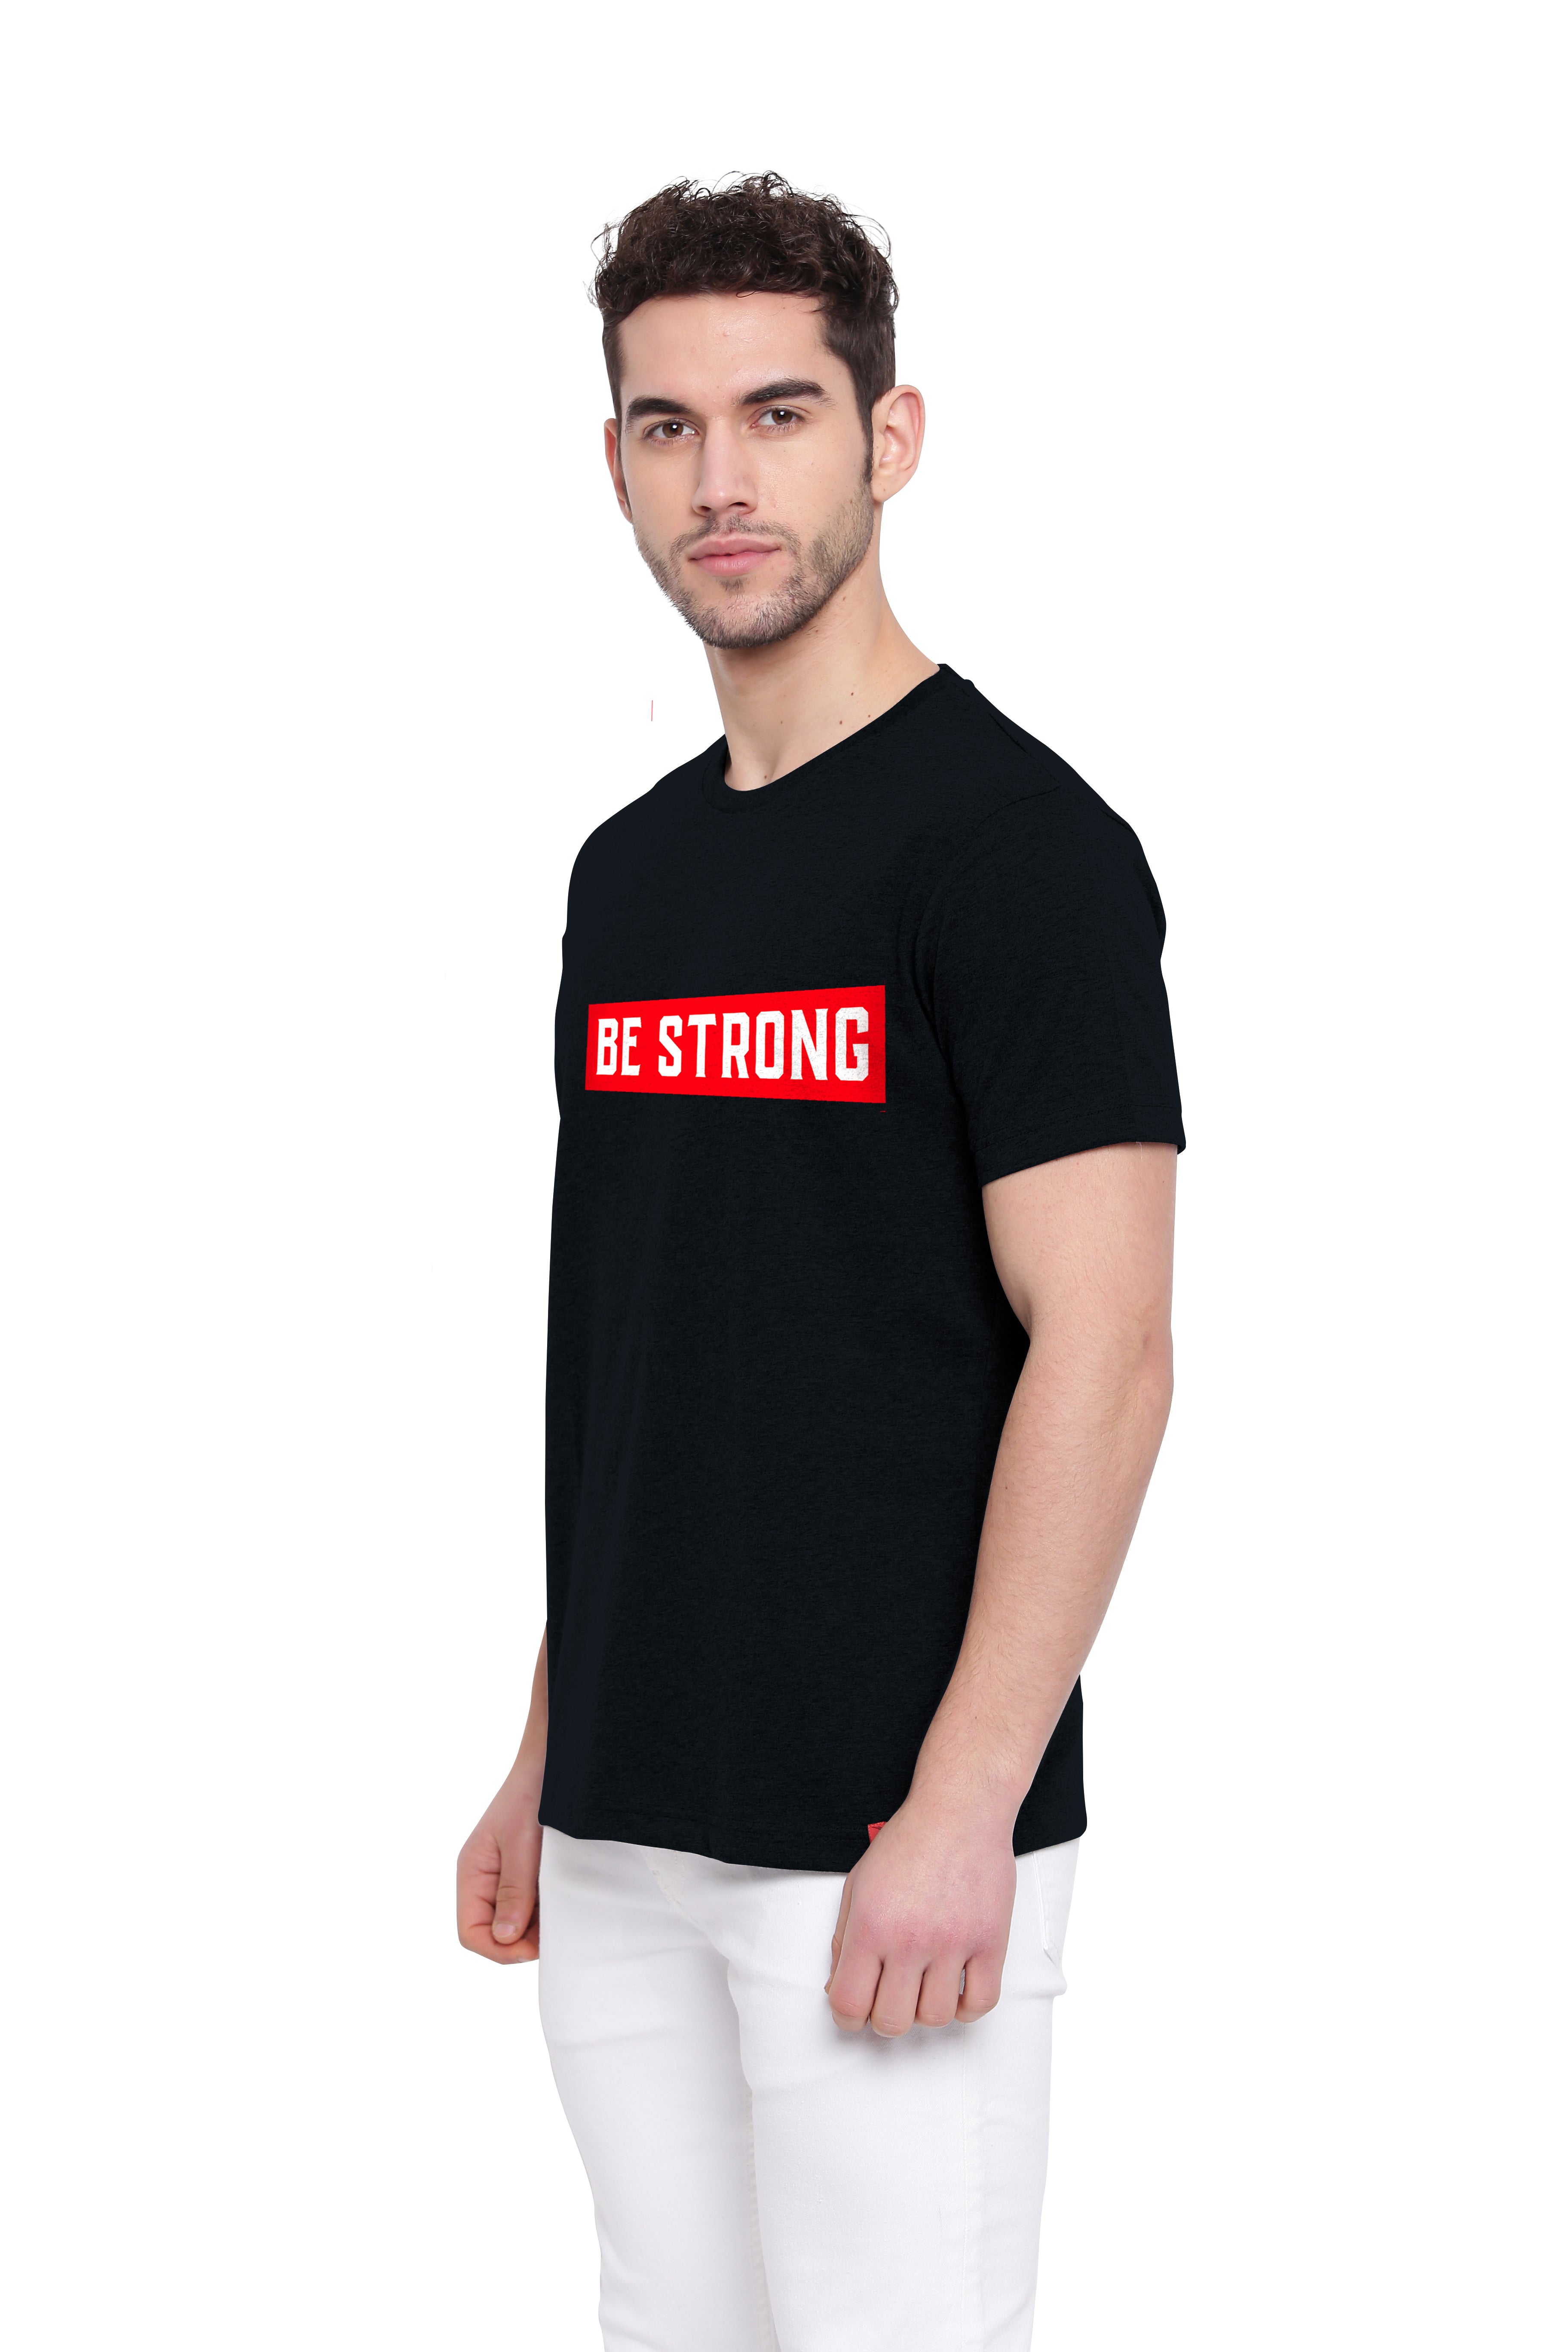 Poomer Printed T-Shirt - Be Strong